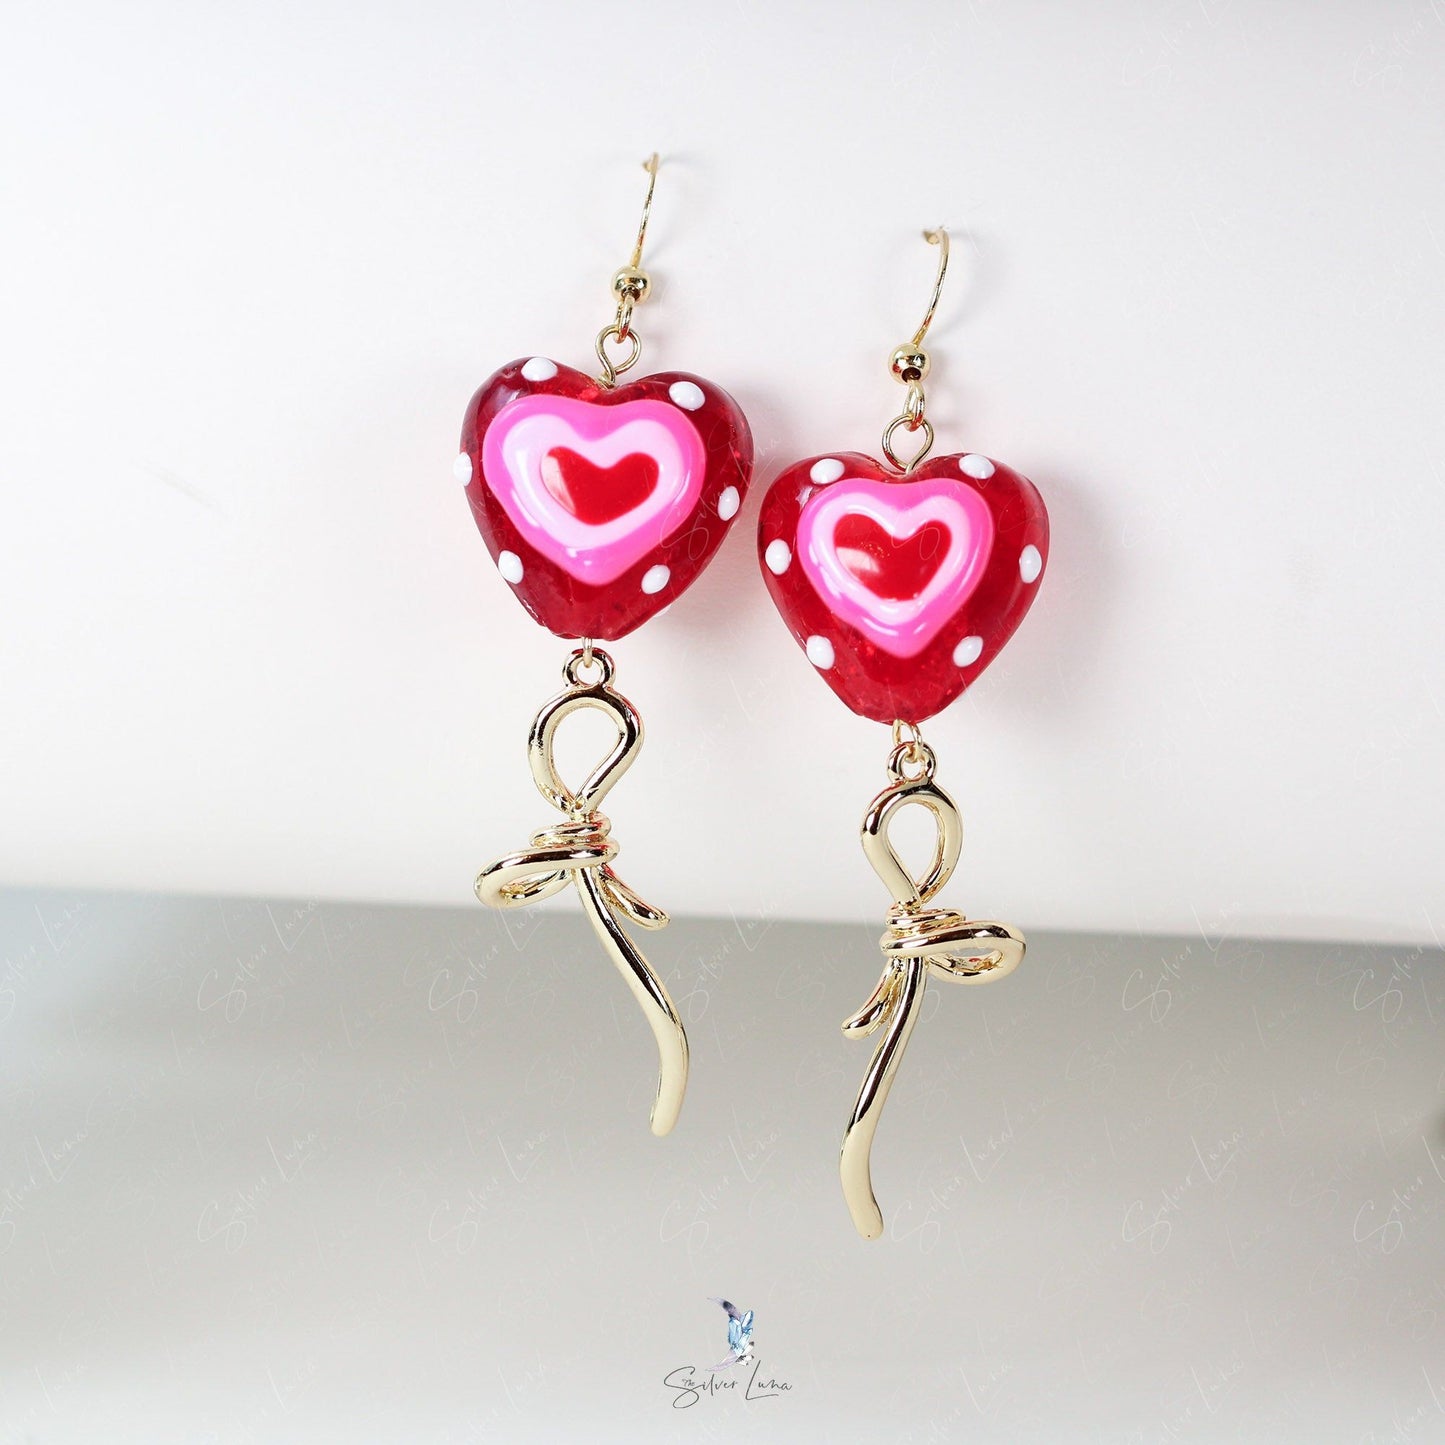 glass heart bead bowtie earrings